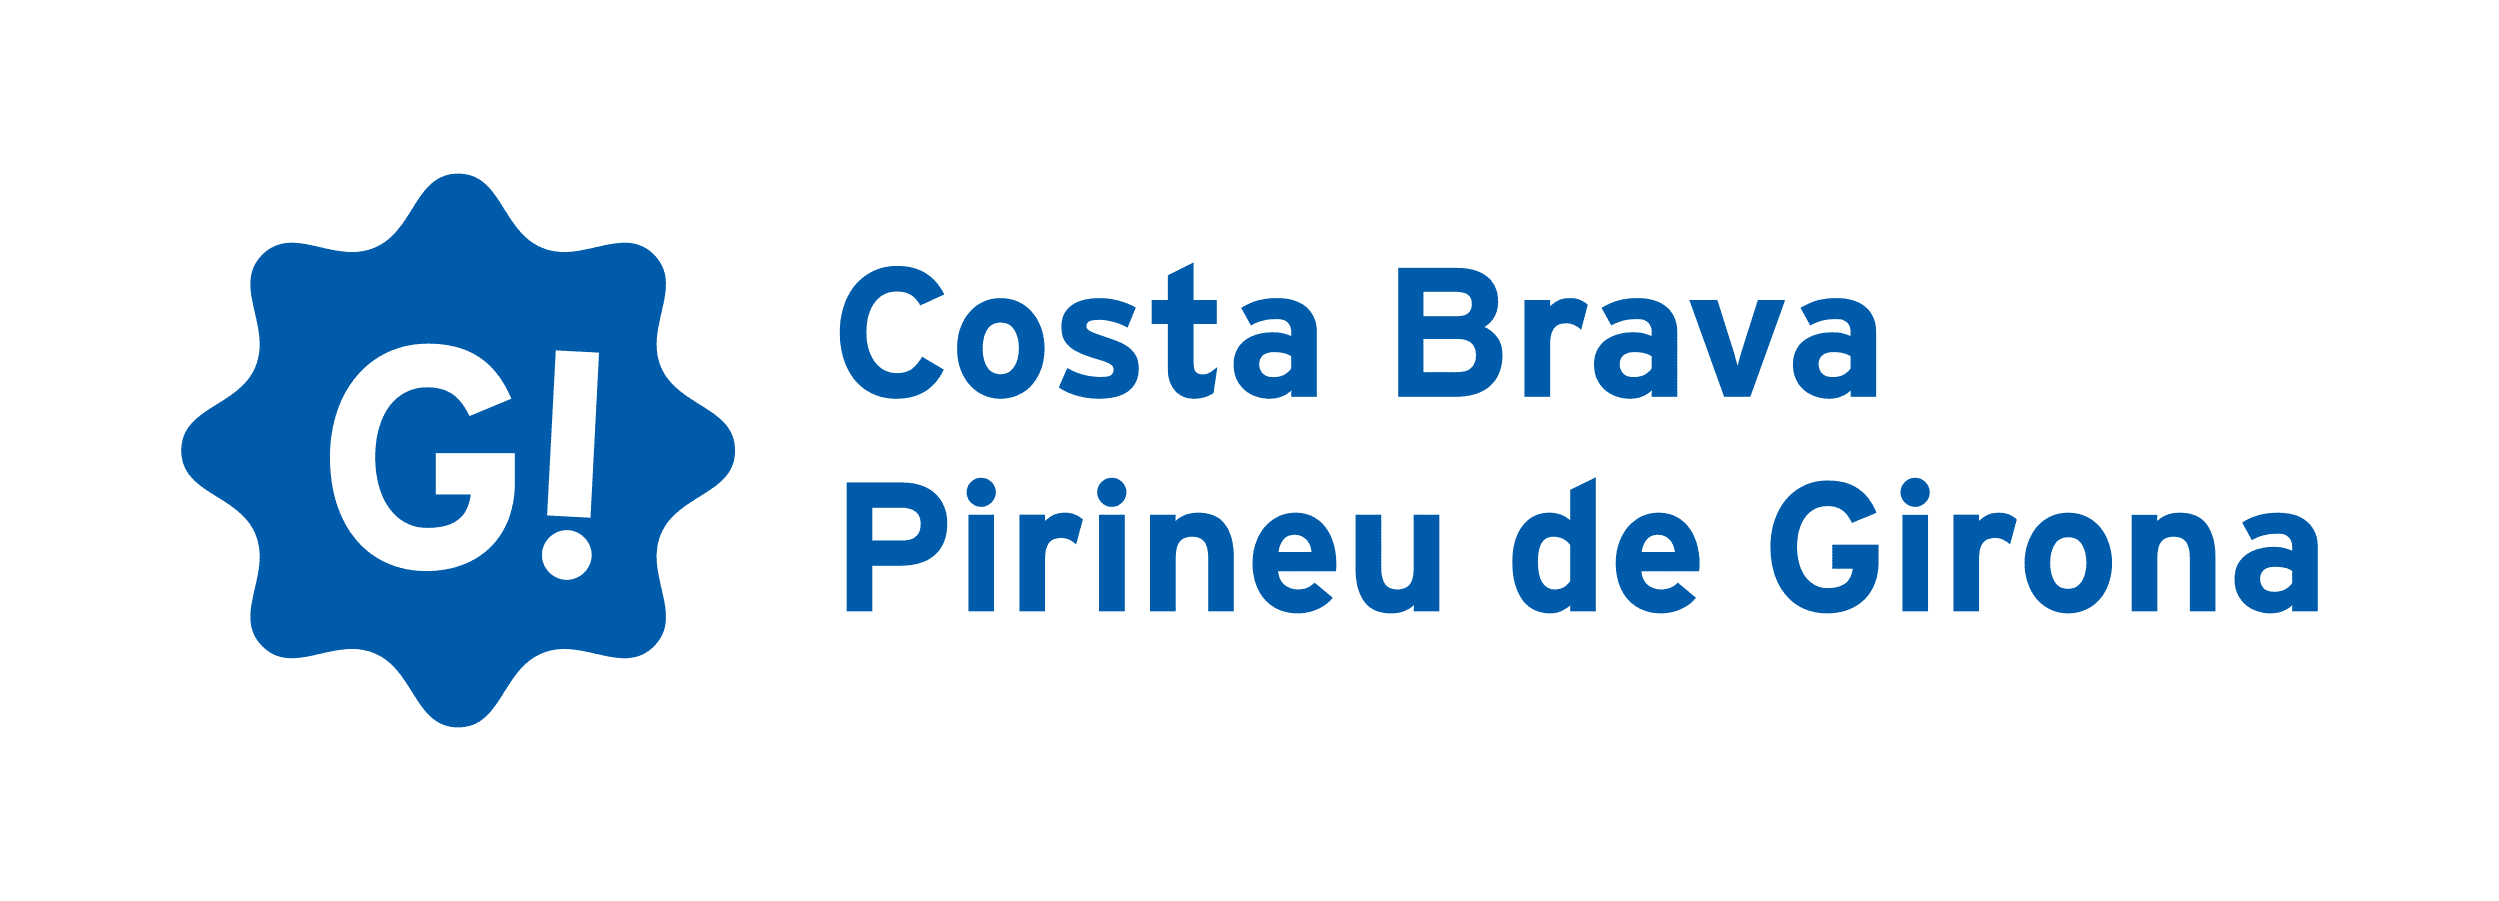 Logo Costa Brava i el Pirineu de Girona